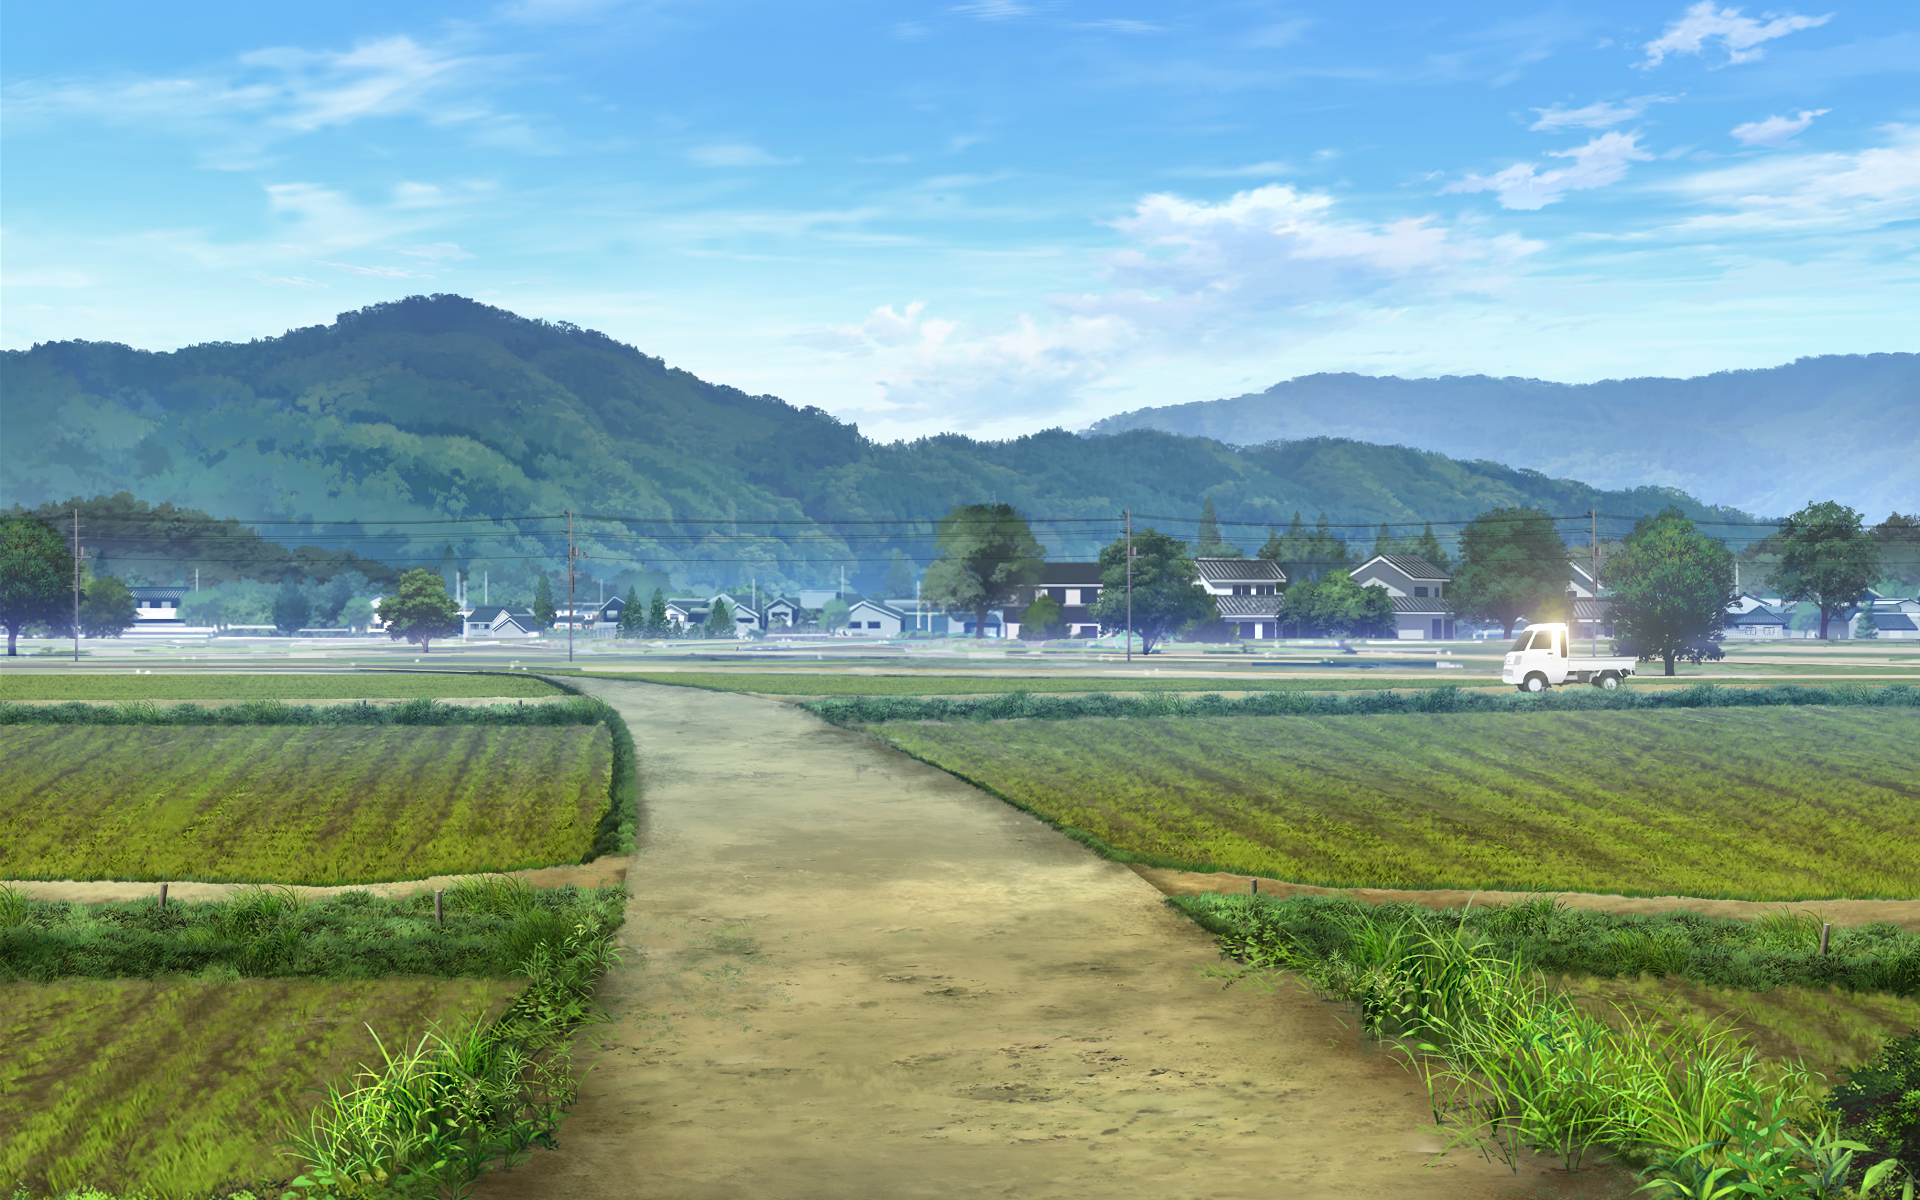 Sakura Quest Backgrounds, Compatible - PC, Mobile, Gadgets| 1920x1200 px